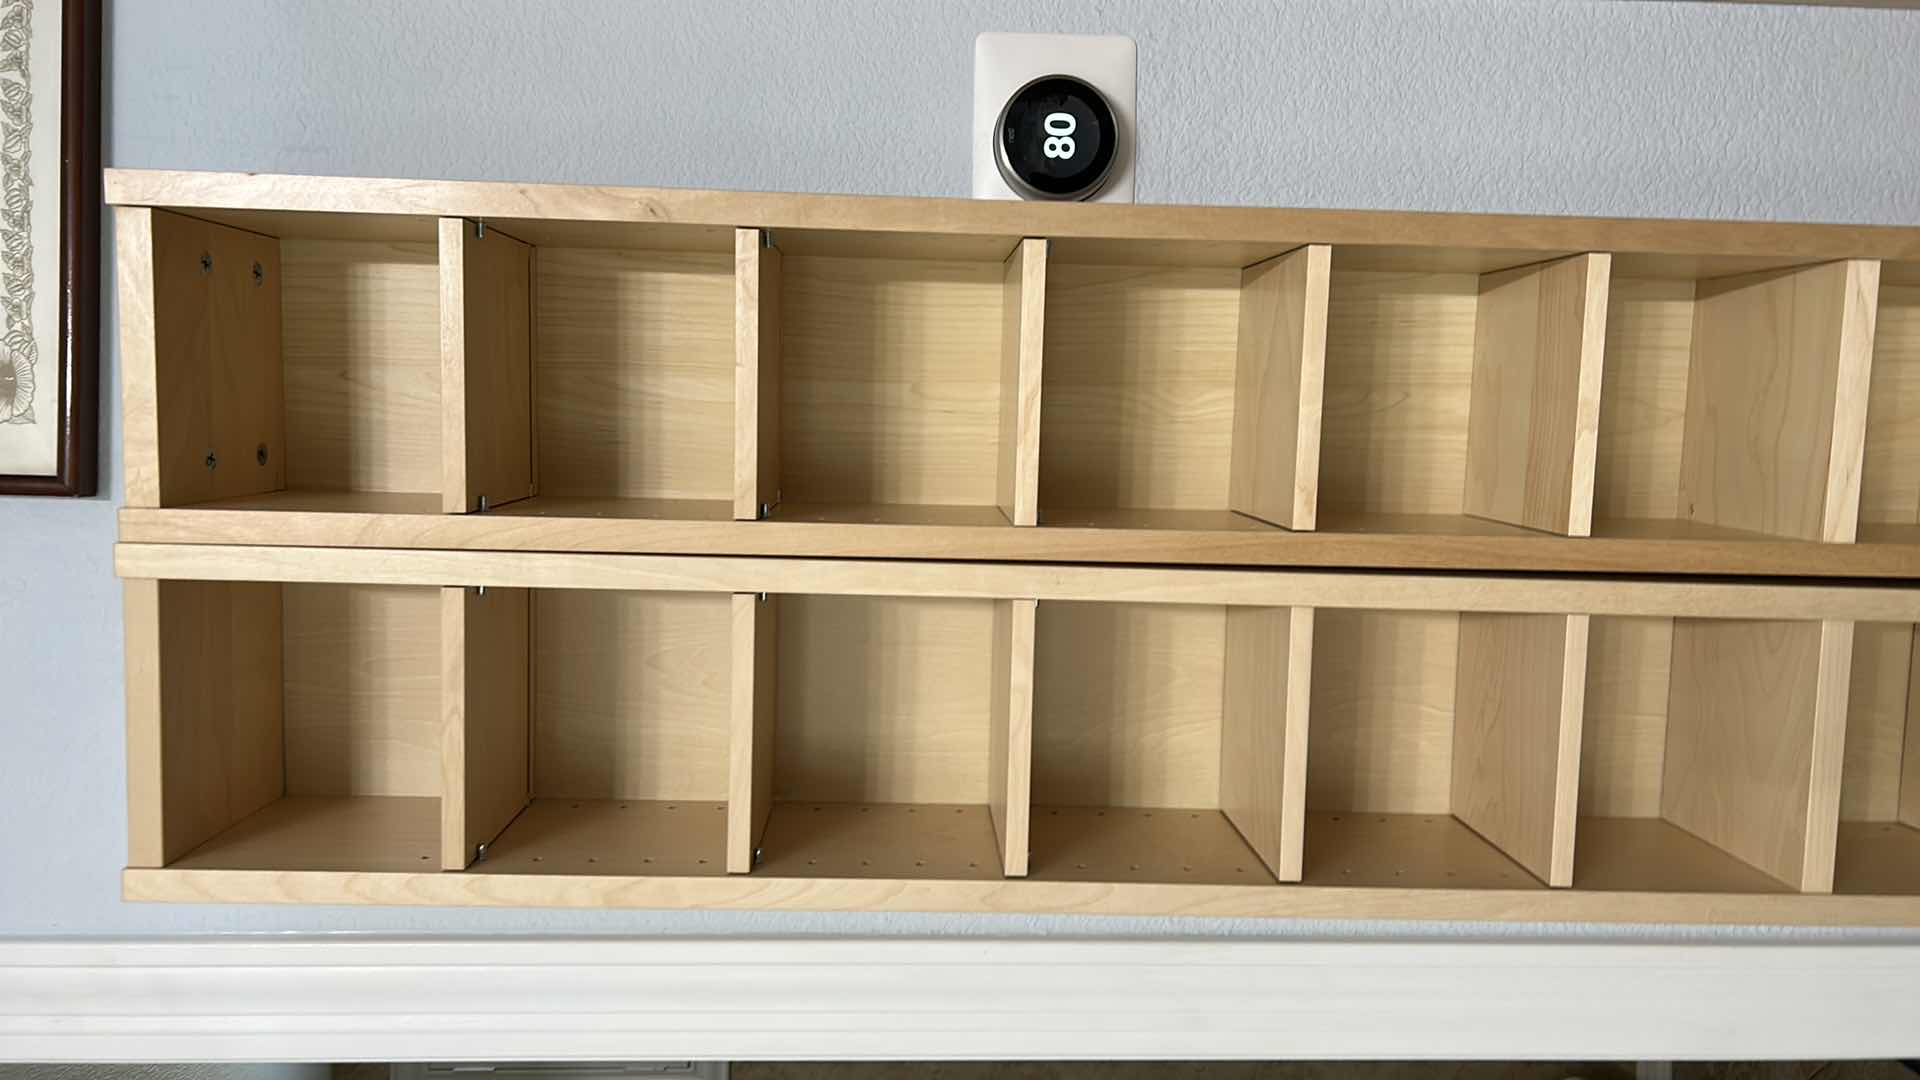 Photo 2 of 2 -  IKEA THIN SHELVING UNITS  8” x 7” x 80” each